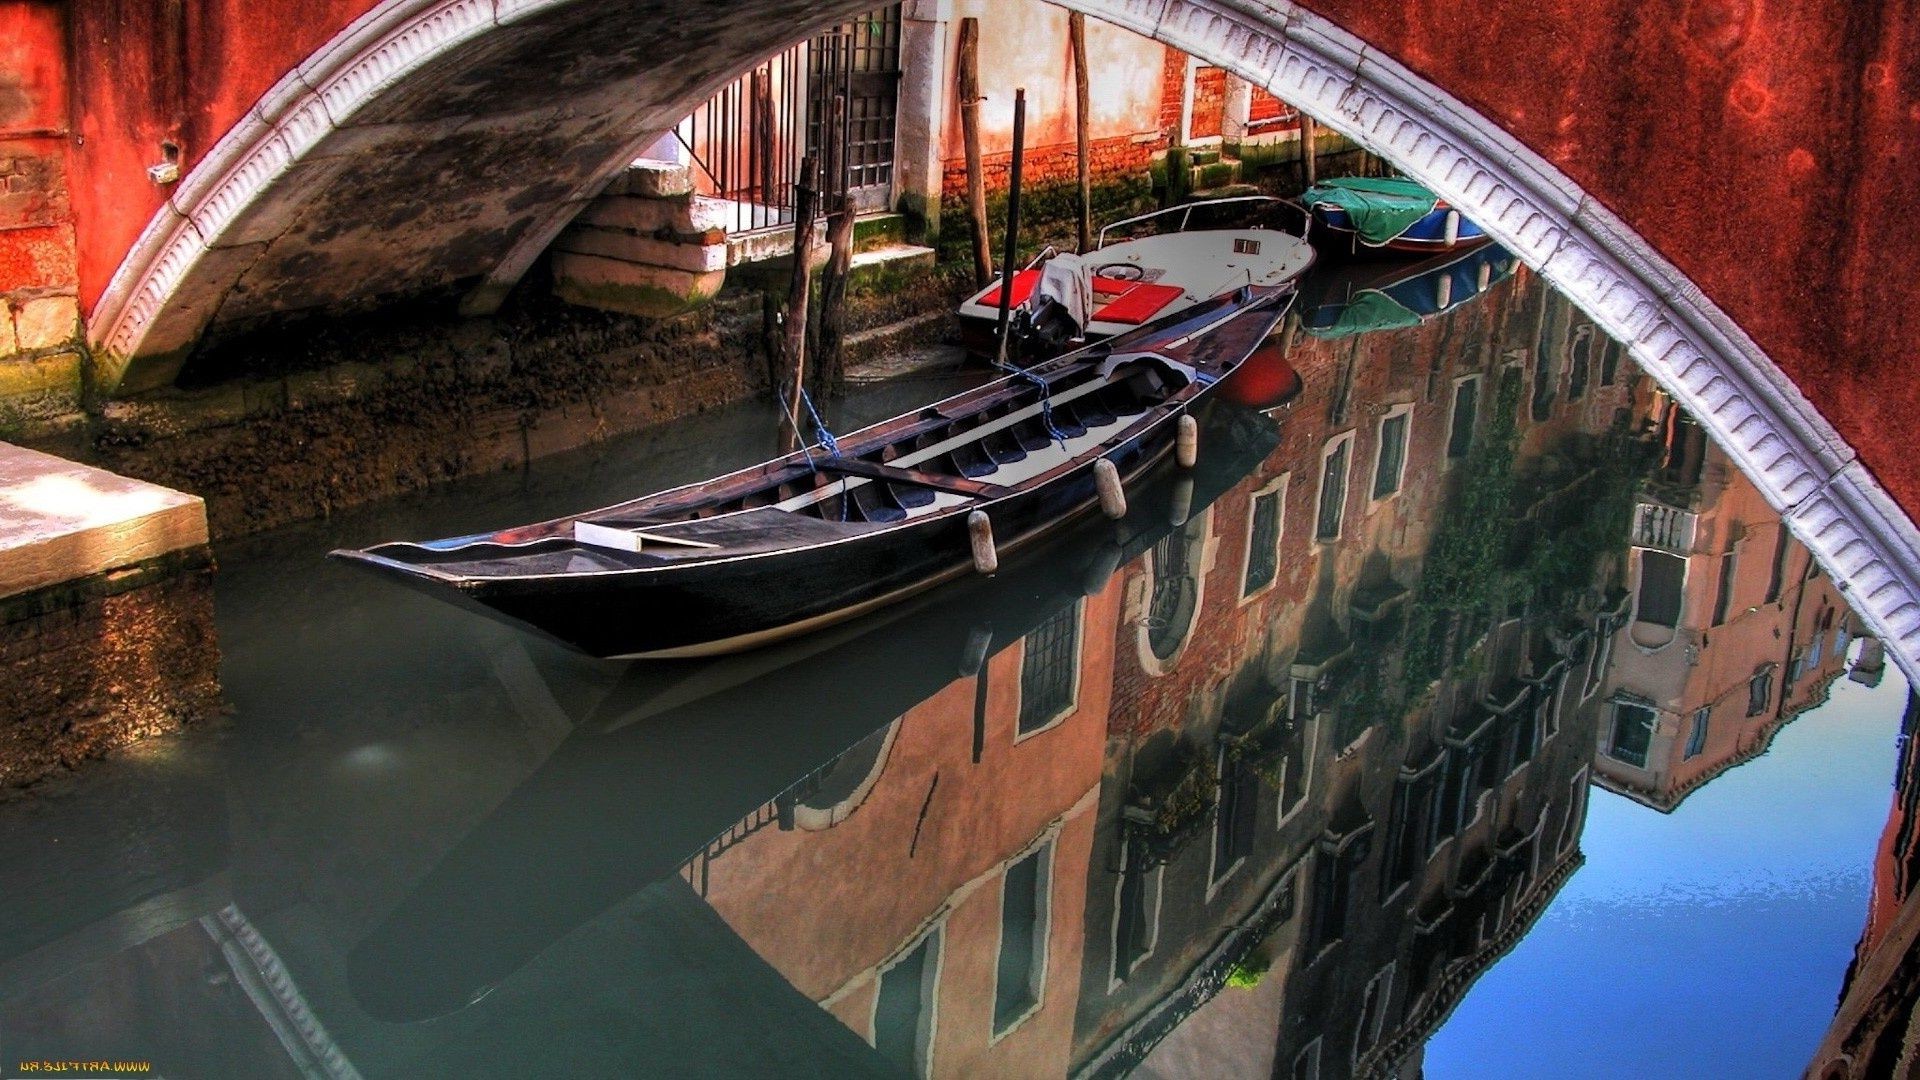 города и архитектура транспортная система путешествия автомобиль лодка воды архитектура плавсредство дом канал город